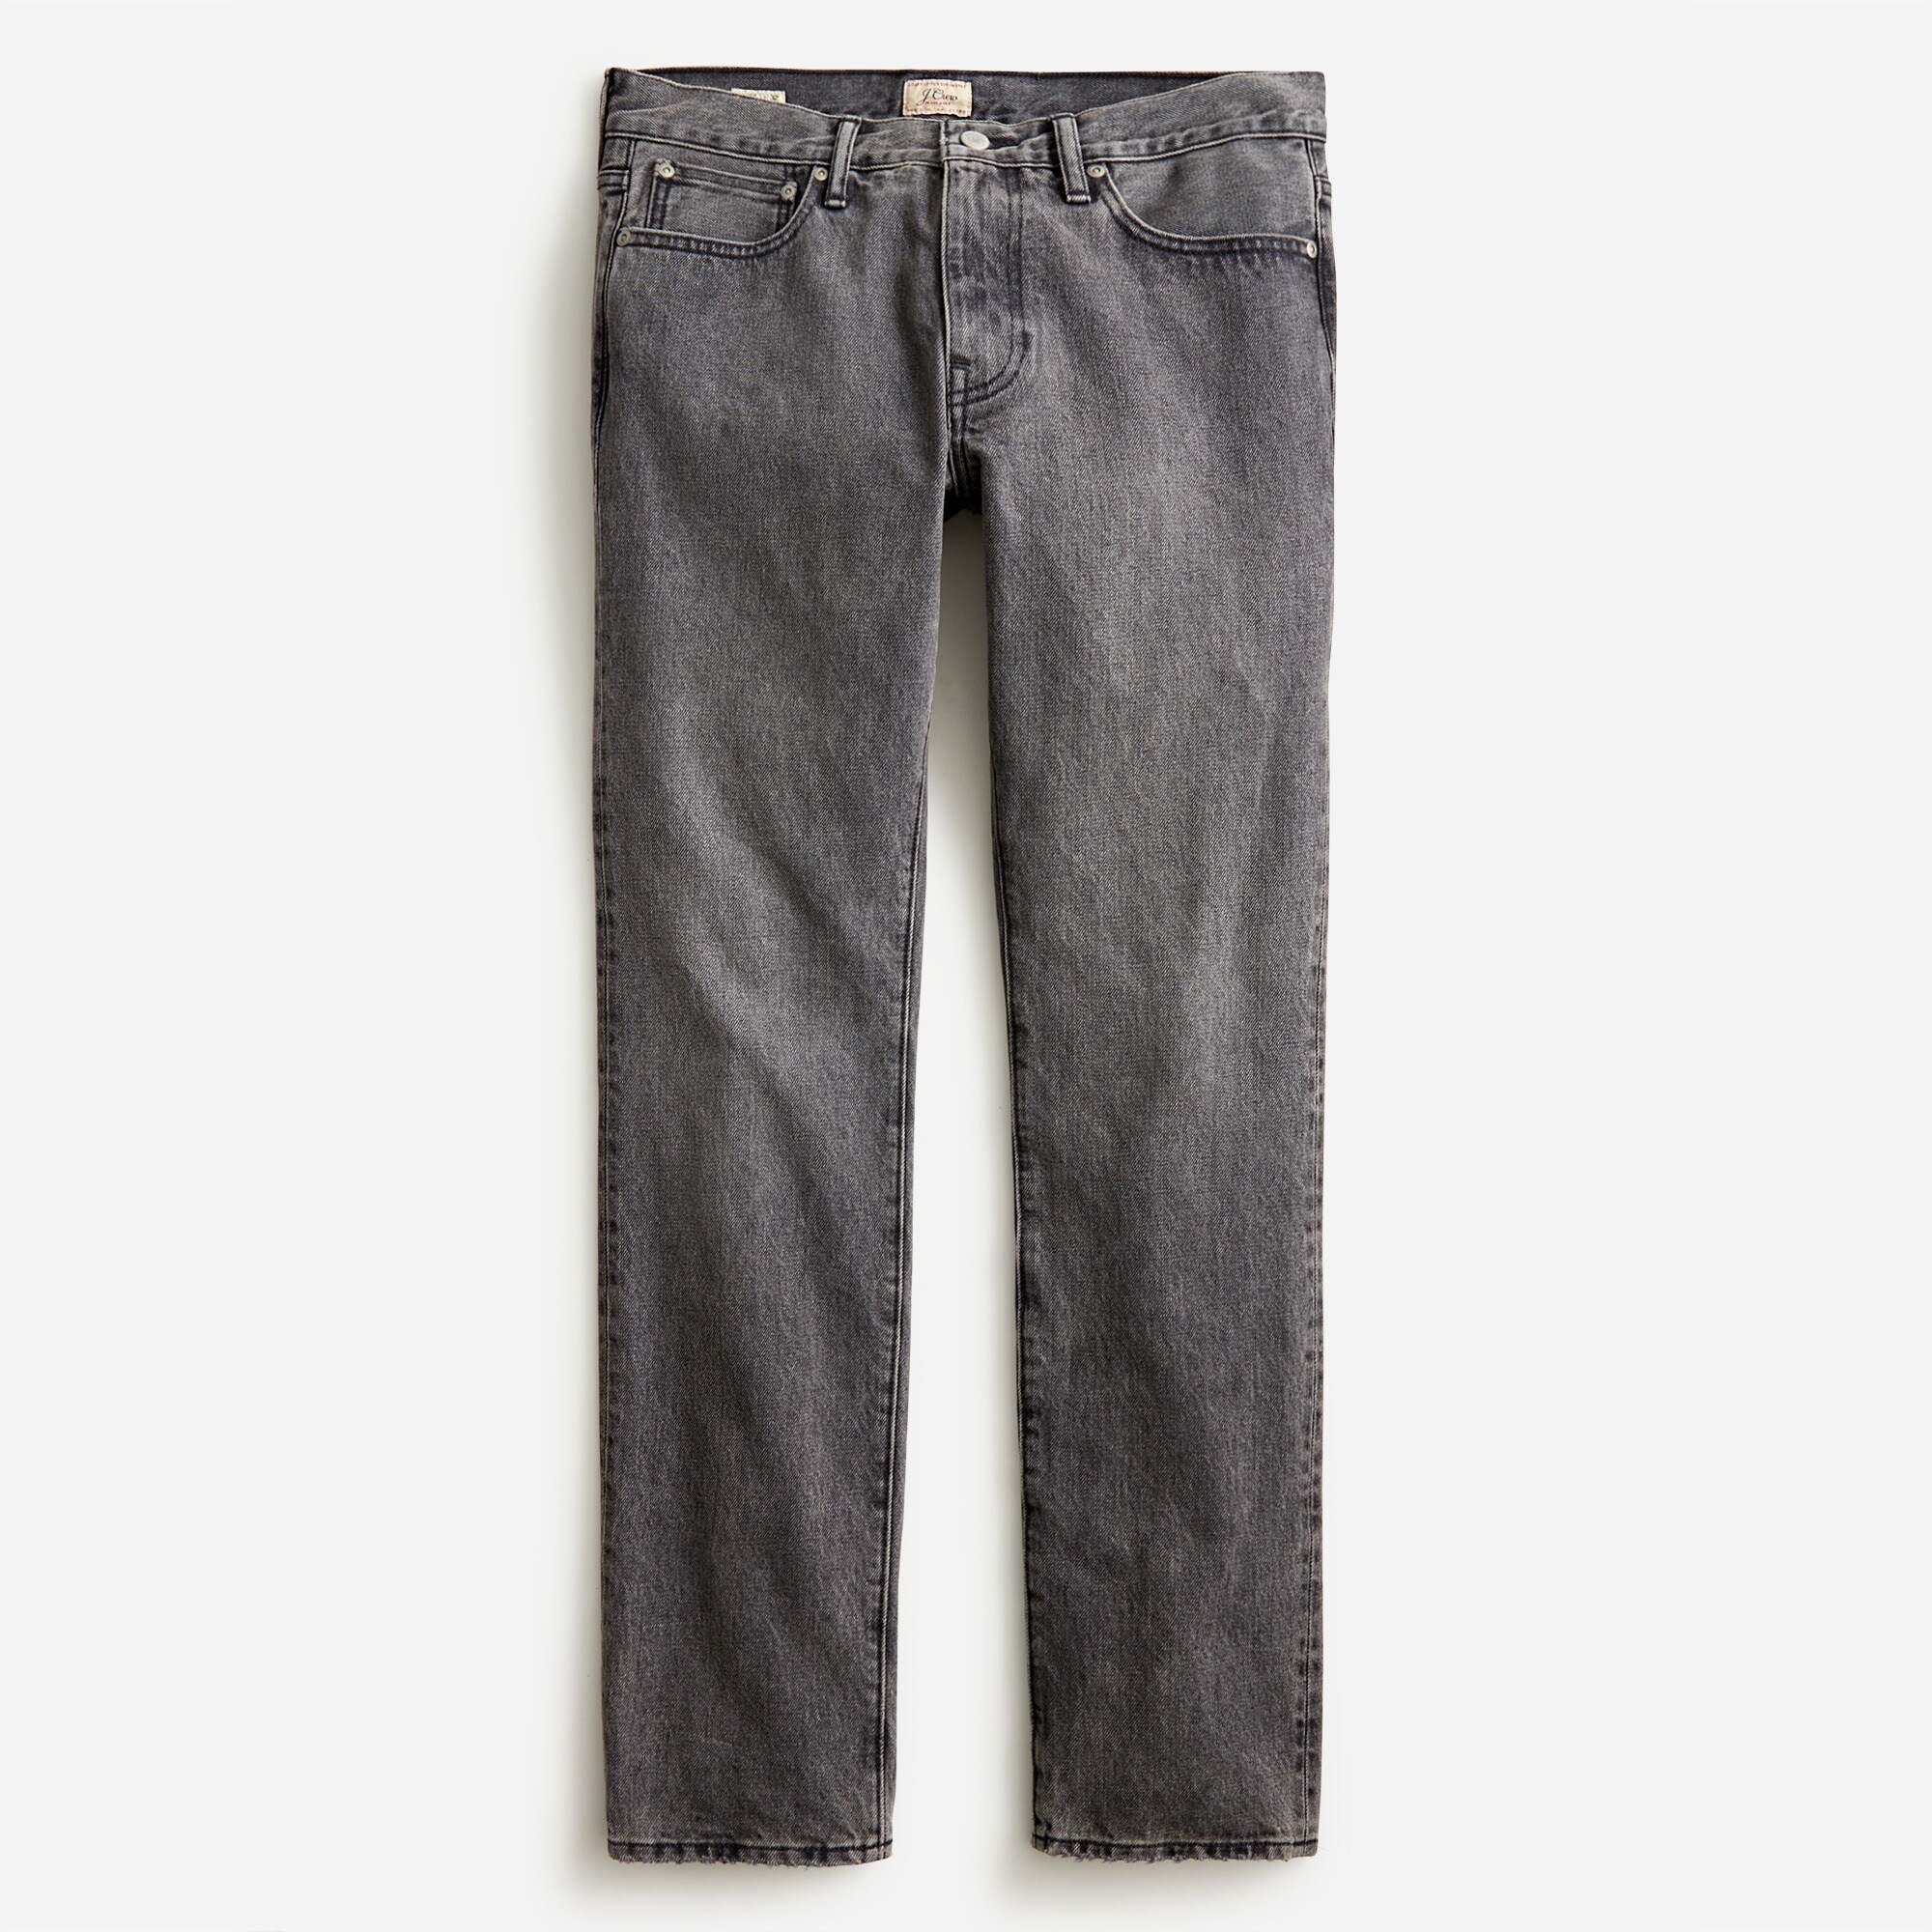 mens 484 Slim-fit jean in black wash